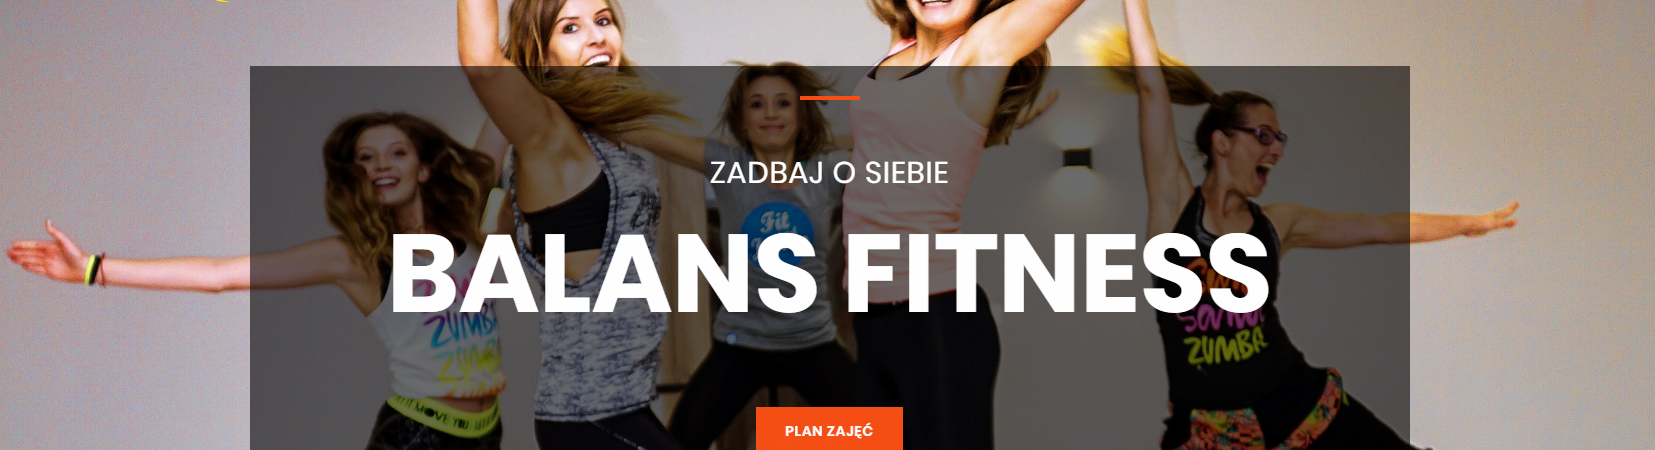 Strona internetowa fitness